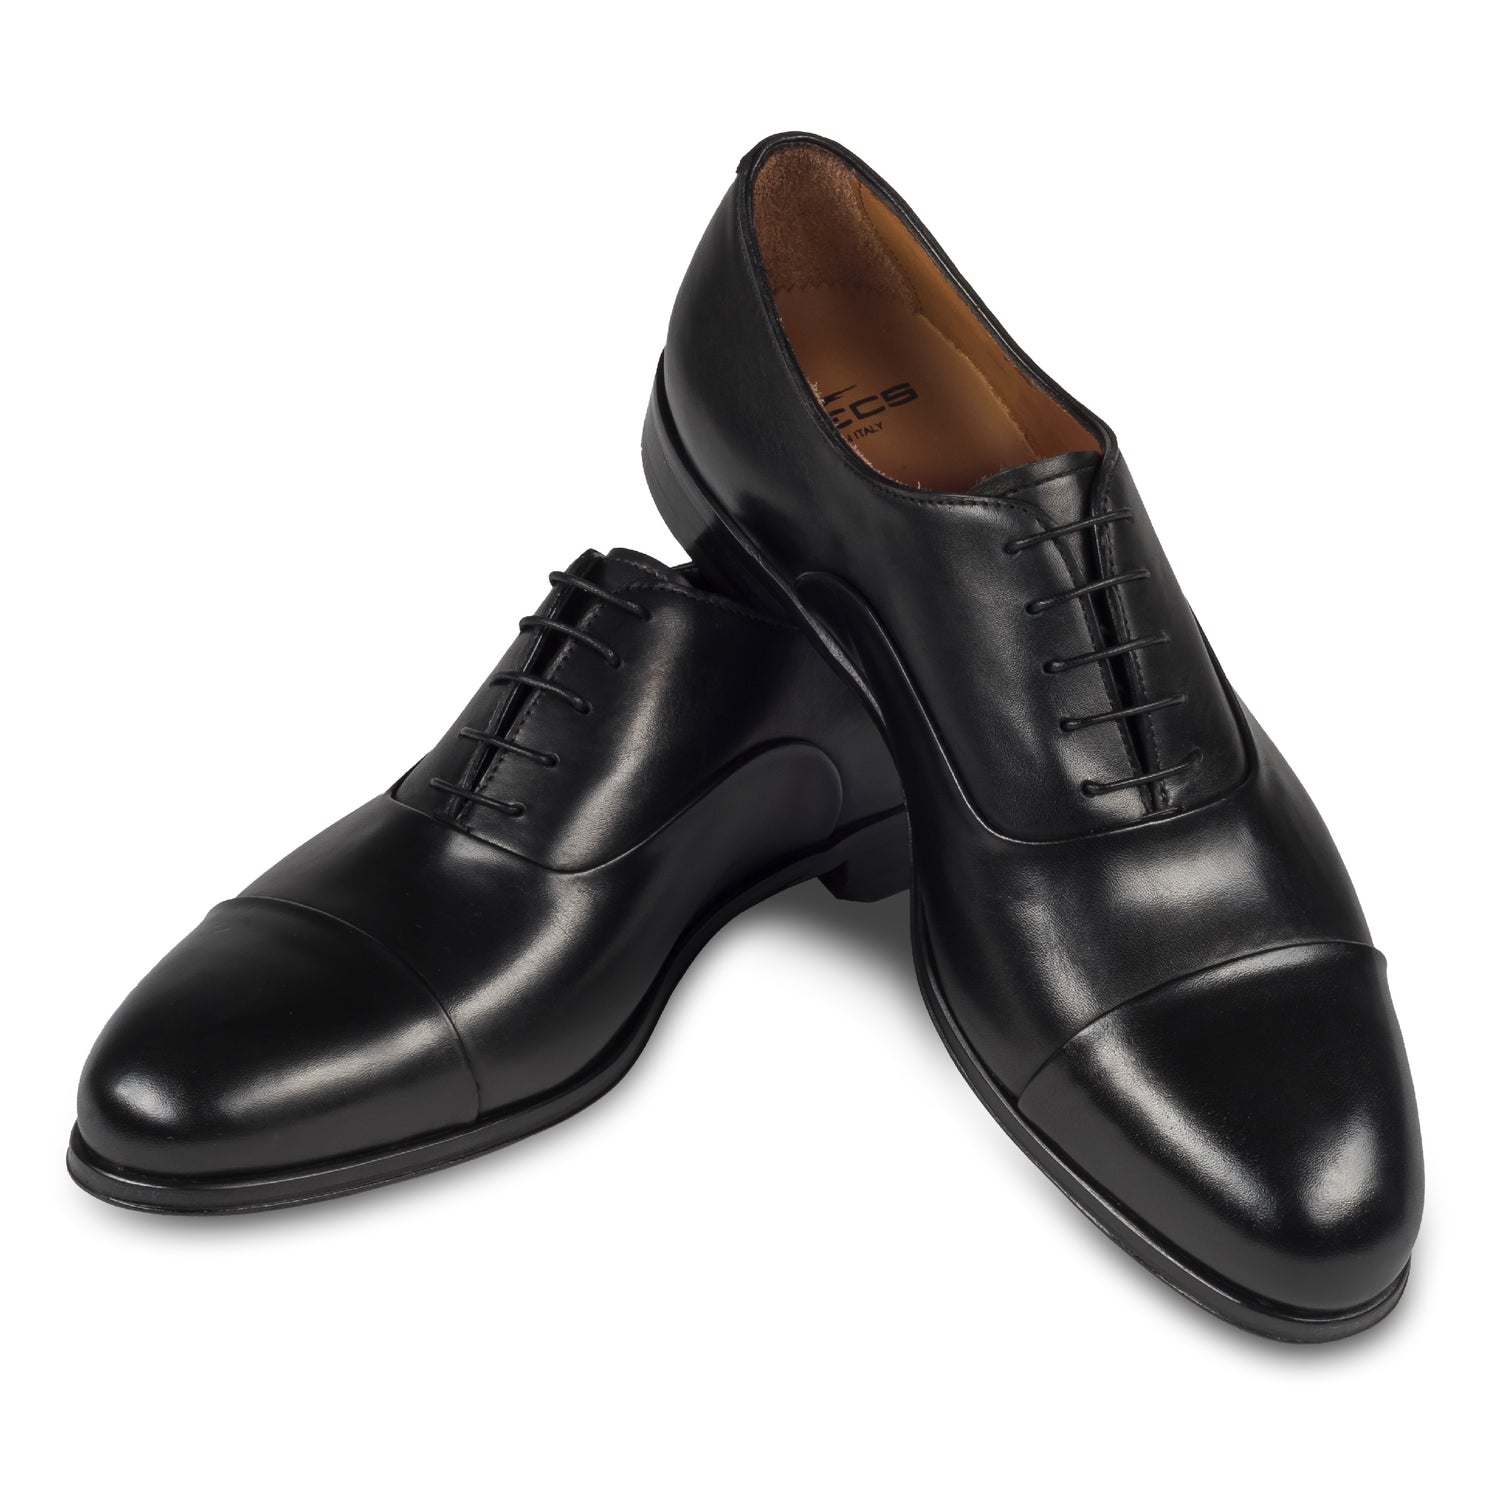 FLECS | Anzugschuh Oxford Captoe in schwarz von FLECS, durchgenäht. Paarweise Ansicht Schuhe überkreuzt aufgestellt. Bei Sisento.